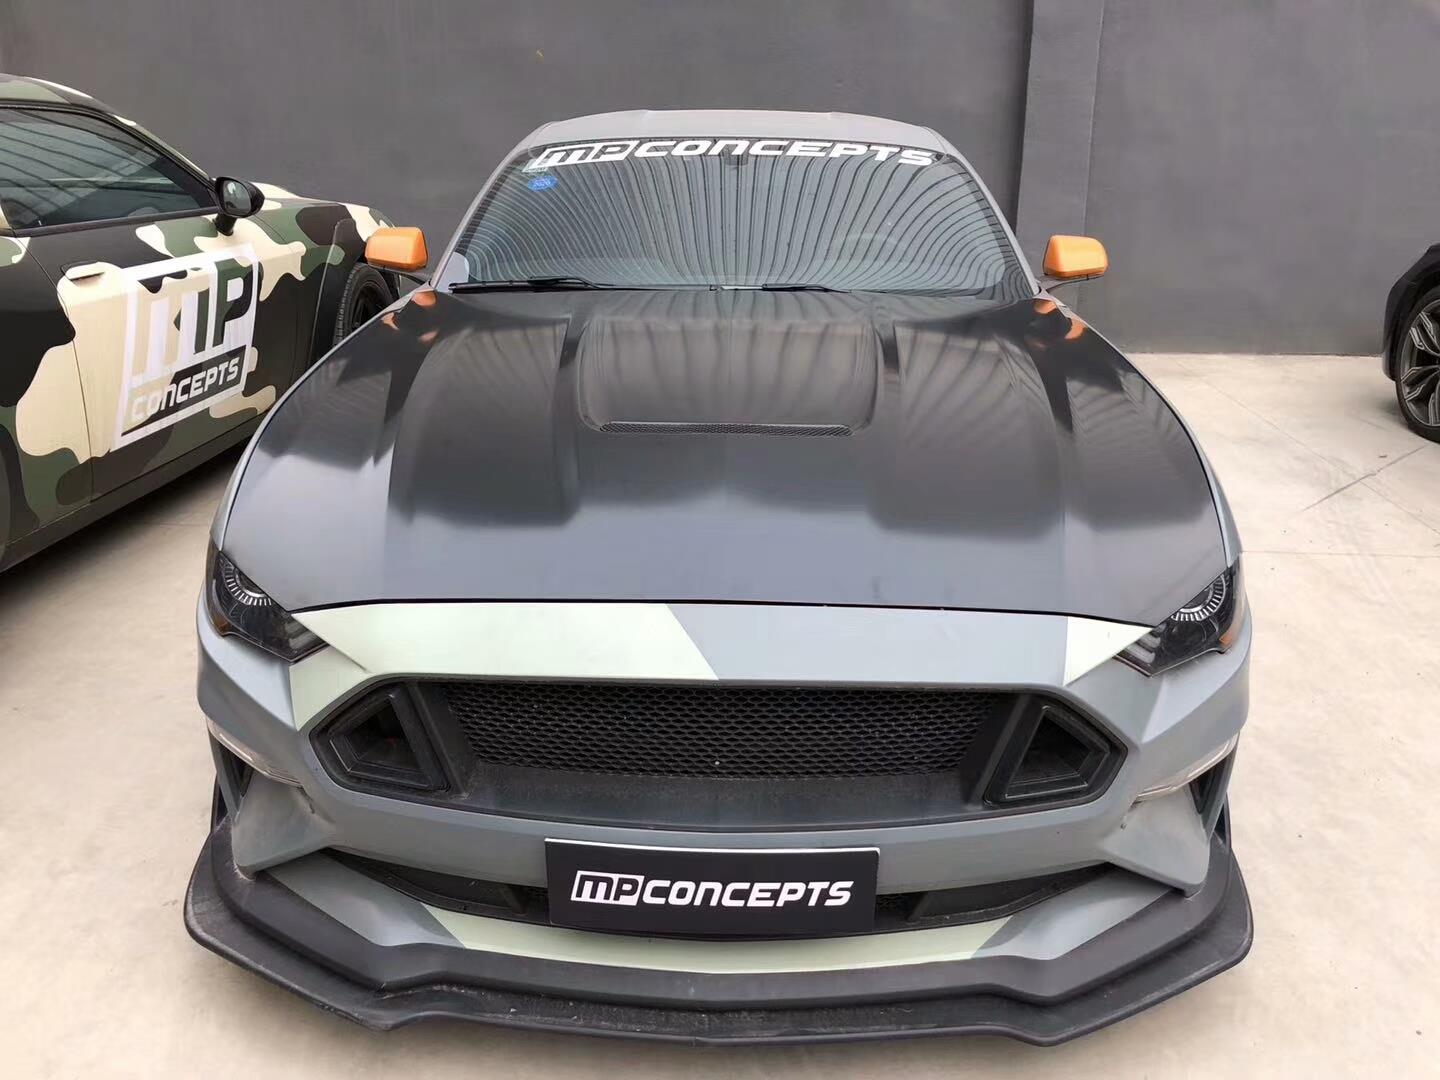 Compre capô / capô de alumínio MP Concepts para Ford Mustang. Estilo GT350